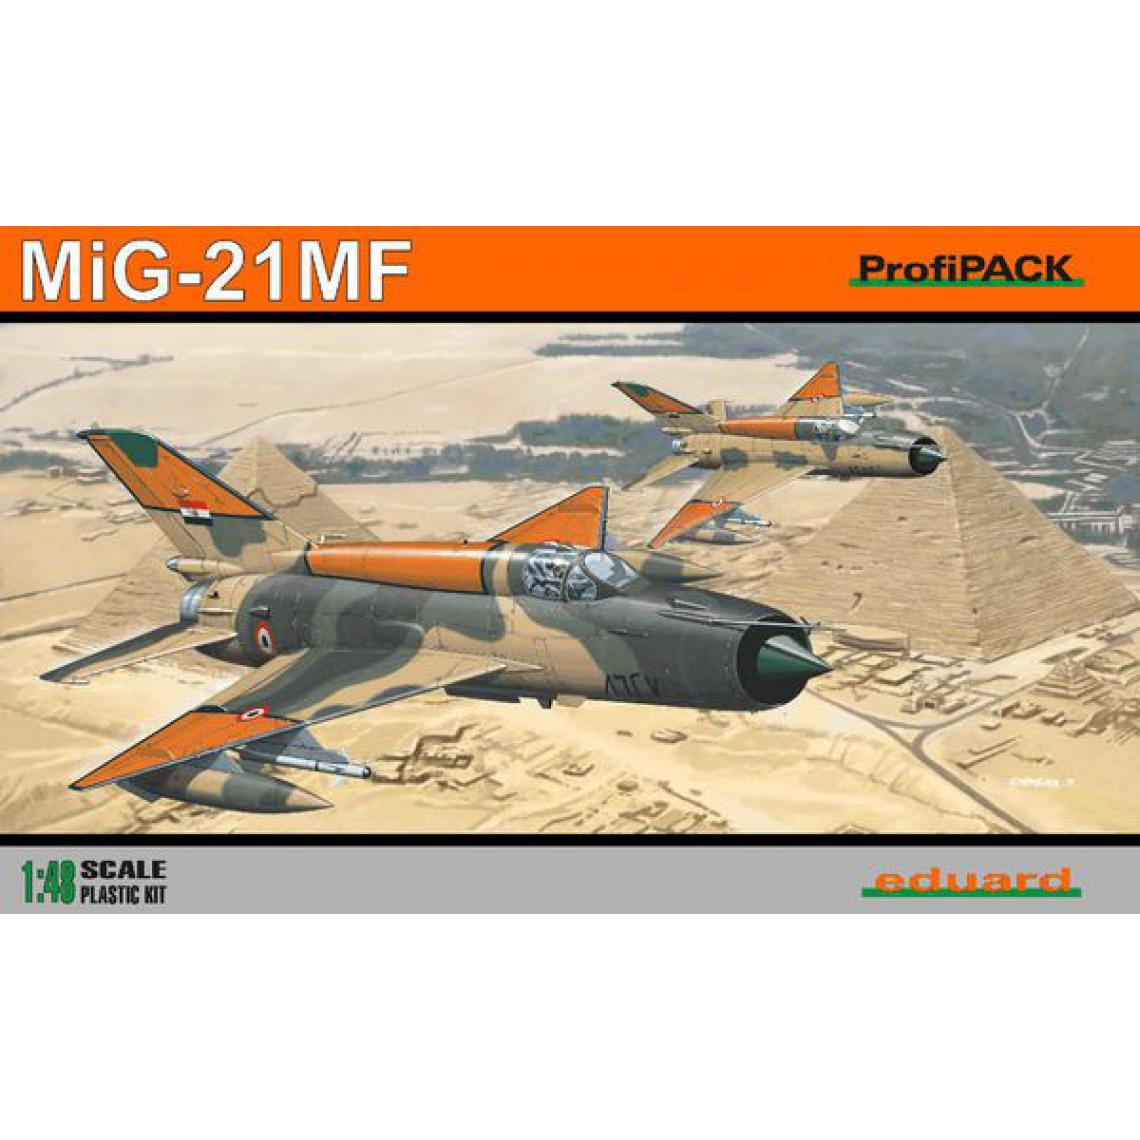 Eduard - MiG-21MF ProfiPack Reedition - 1:48e - Eduard Plastic Kits - Accessoires et pièces